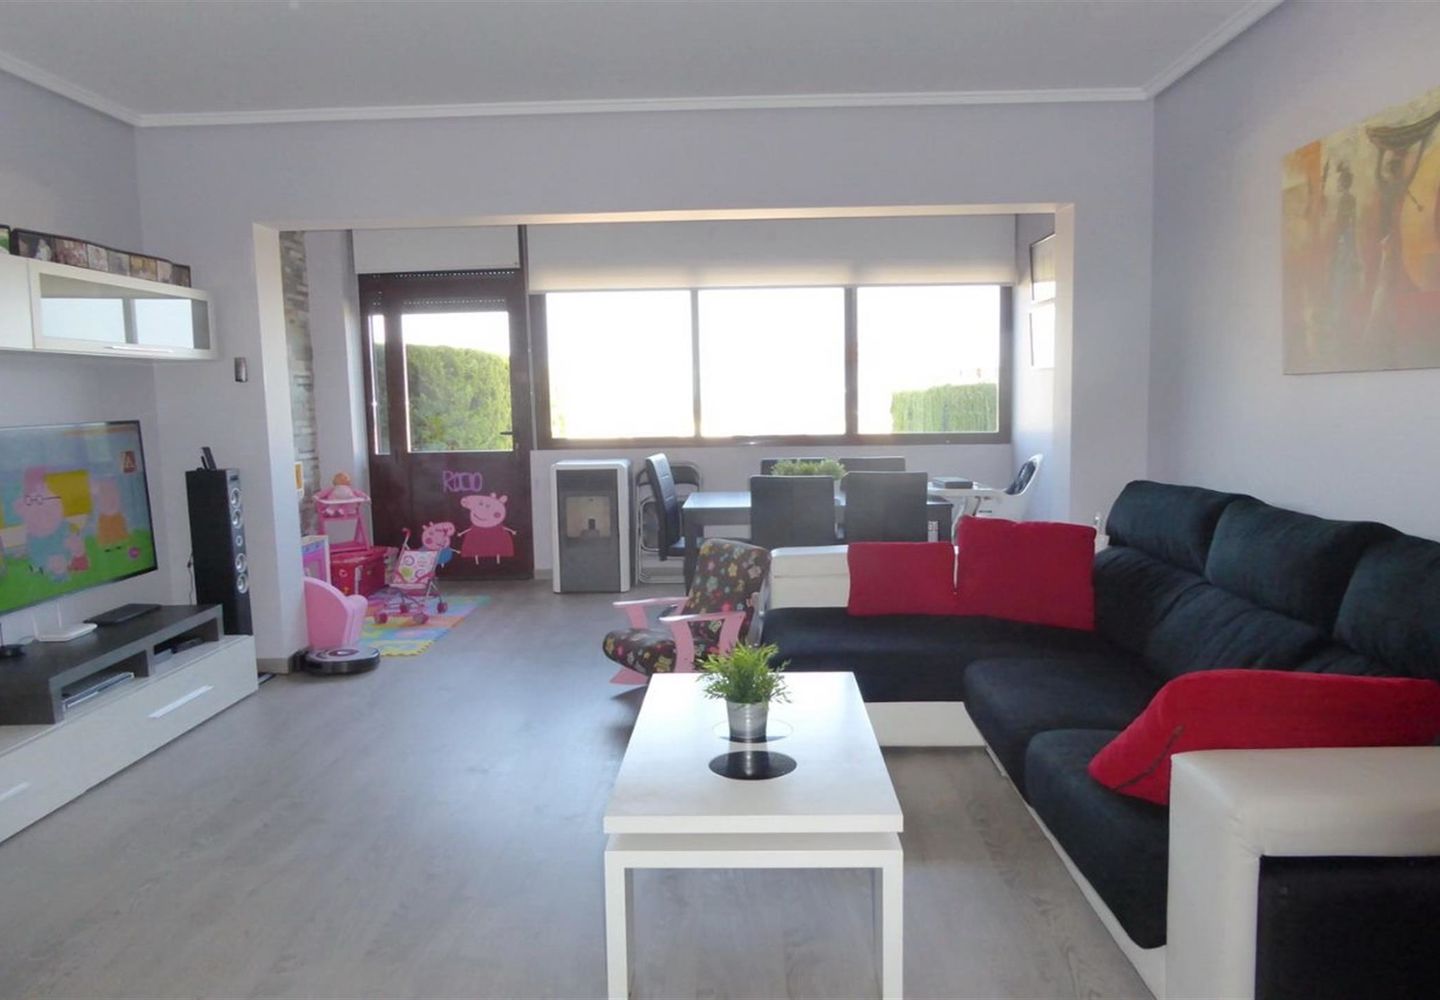 CASALINA ESPANA stelt te koop gerenoveerde villa(2015) van 112 m² in Polop, Costa Blanca Noord, met bergzicht. Polop is de metropool in de comarcra van Marina Baixa in Alicante en deelt de grens met Callosa d’en Sarria geholpen door de rivier Guadalest